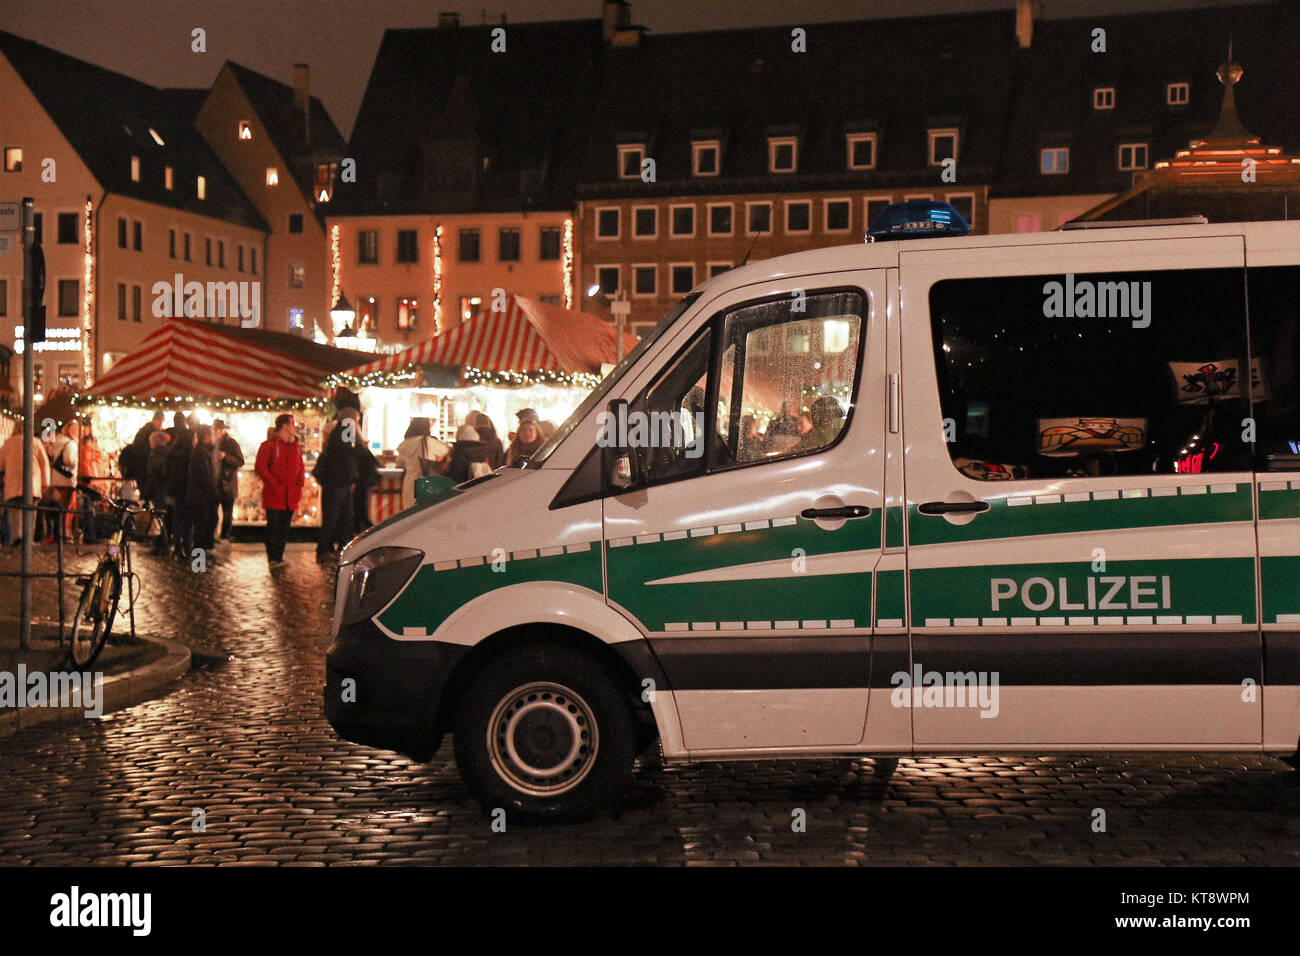 21 Décembre, 2017 - Nuremberg, Bavière, Allemagne - après l'attaque de l'an dernier sur un marché de Noël à Berlin, tous les marchés en Allemagne sont renforcées avec barrières en béton et la protection de la police. (Crédit Image : © Nicolas Muller/SOPA via Zuma sur le fil) Banque D'Images